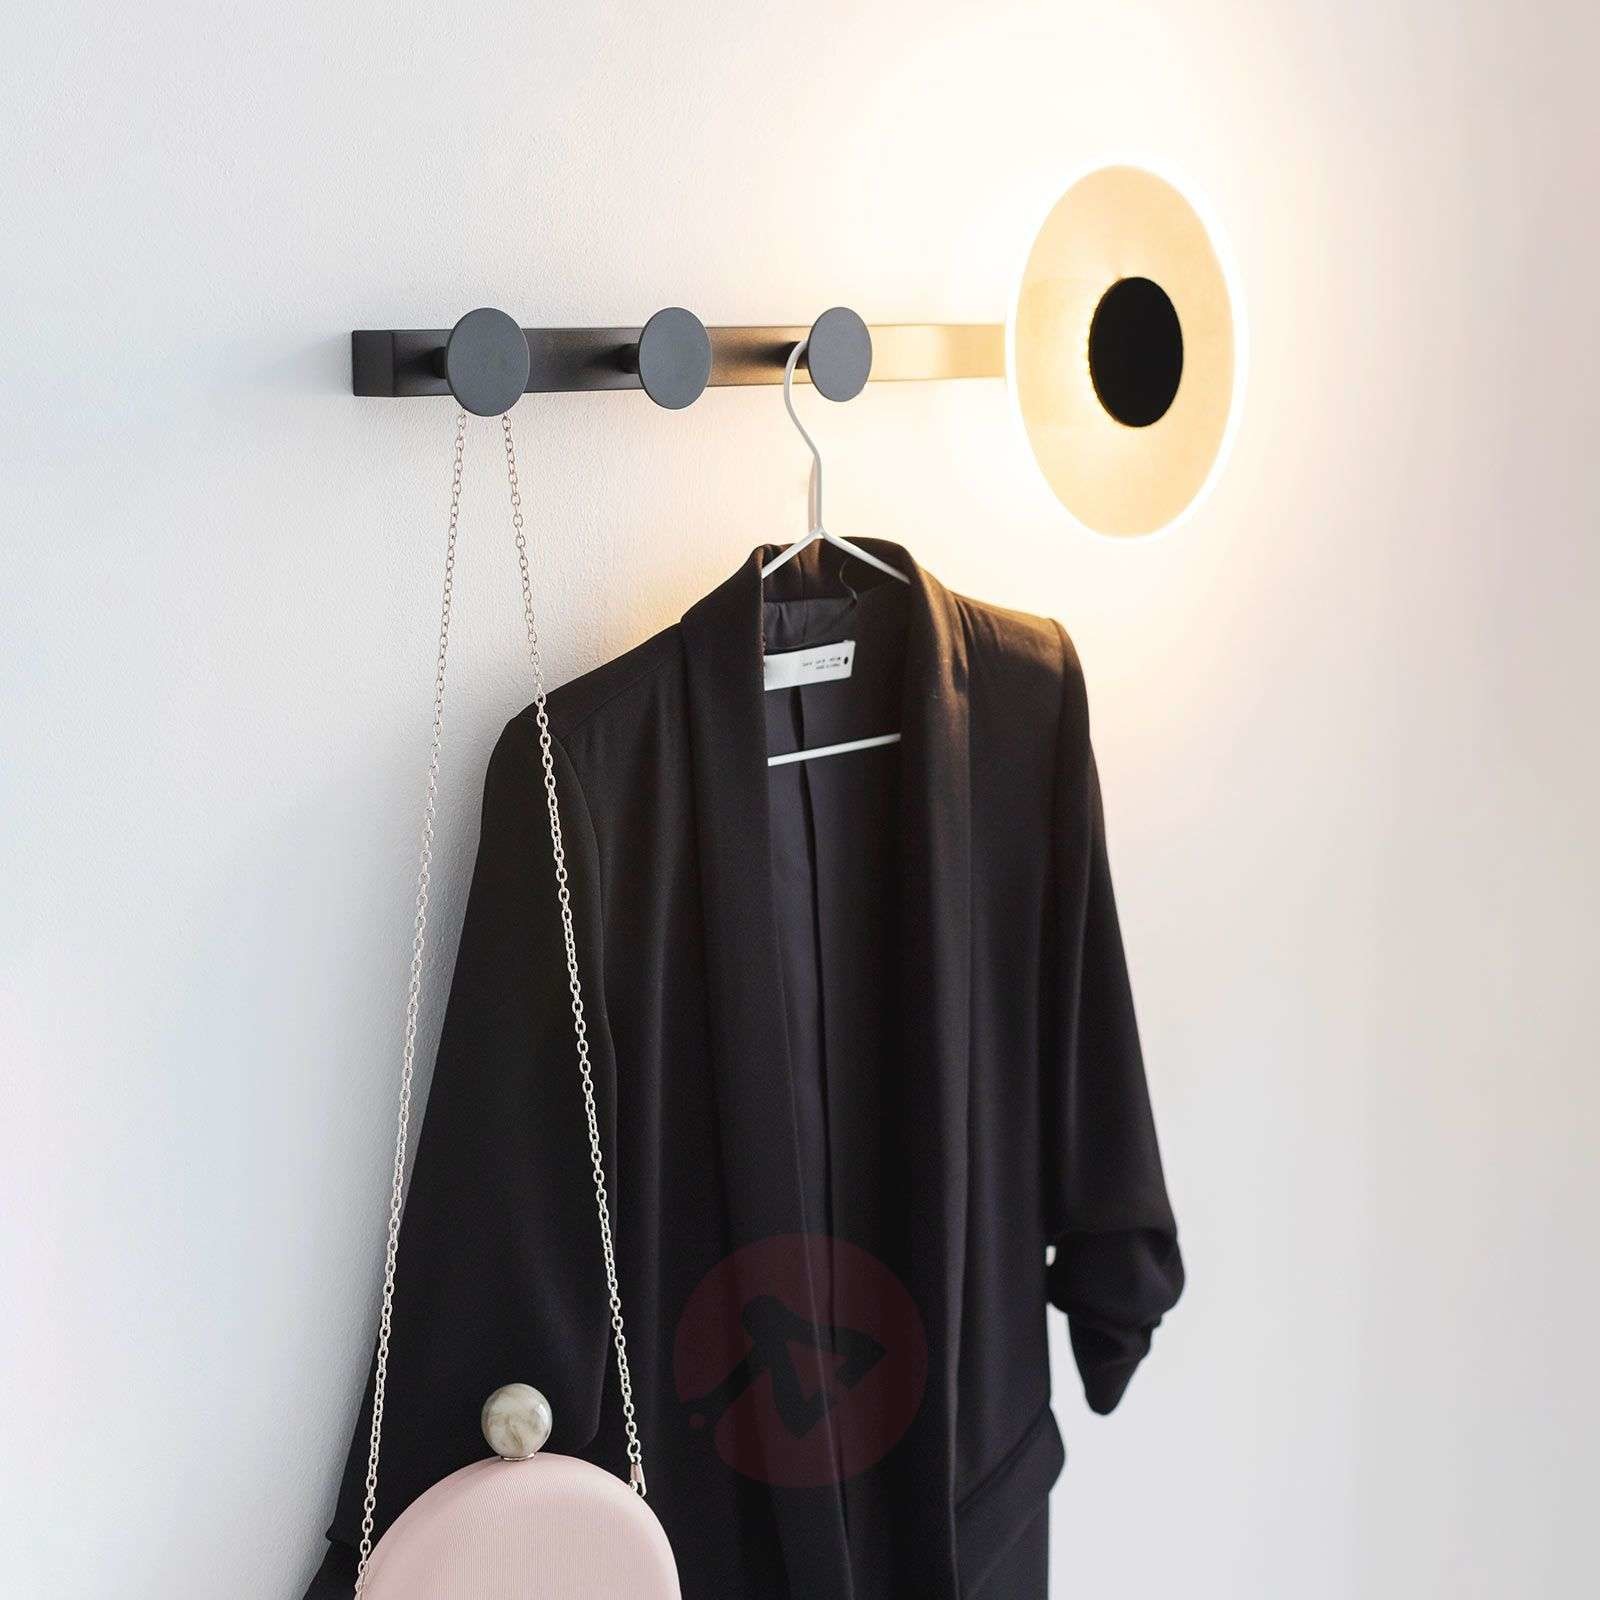 Mantra Kinkiet LED Venus z hakiem na odzież, czarny